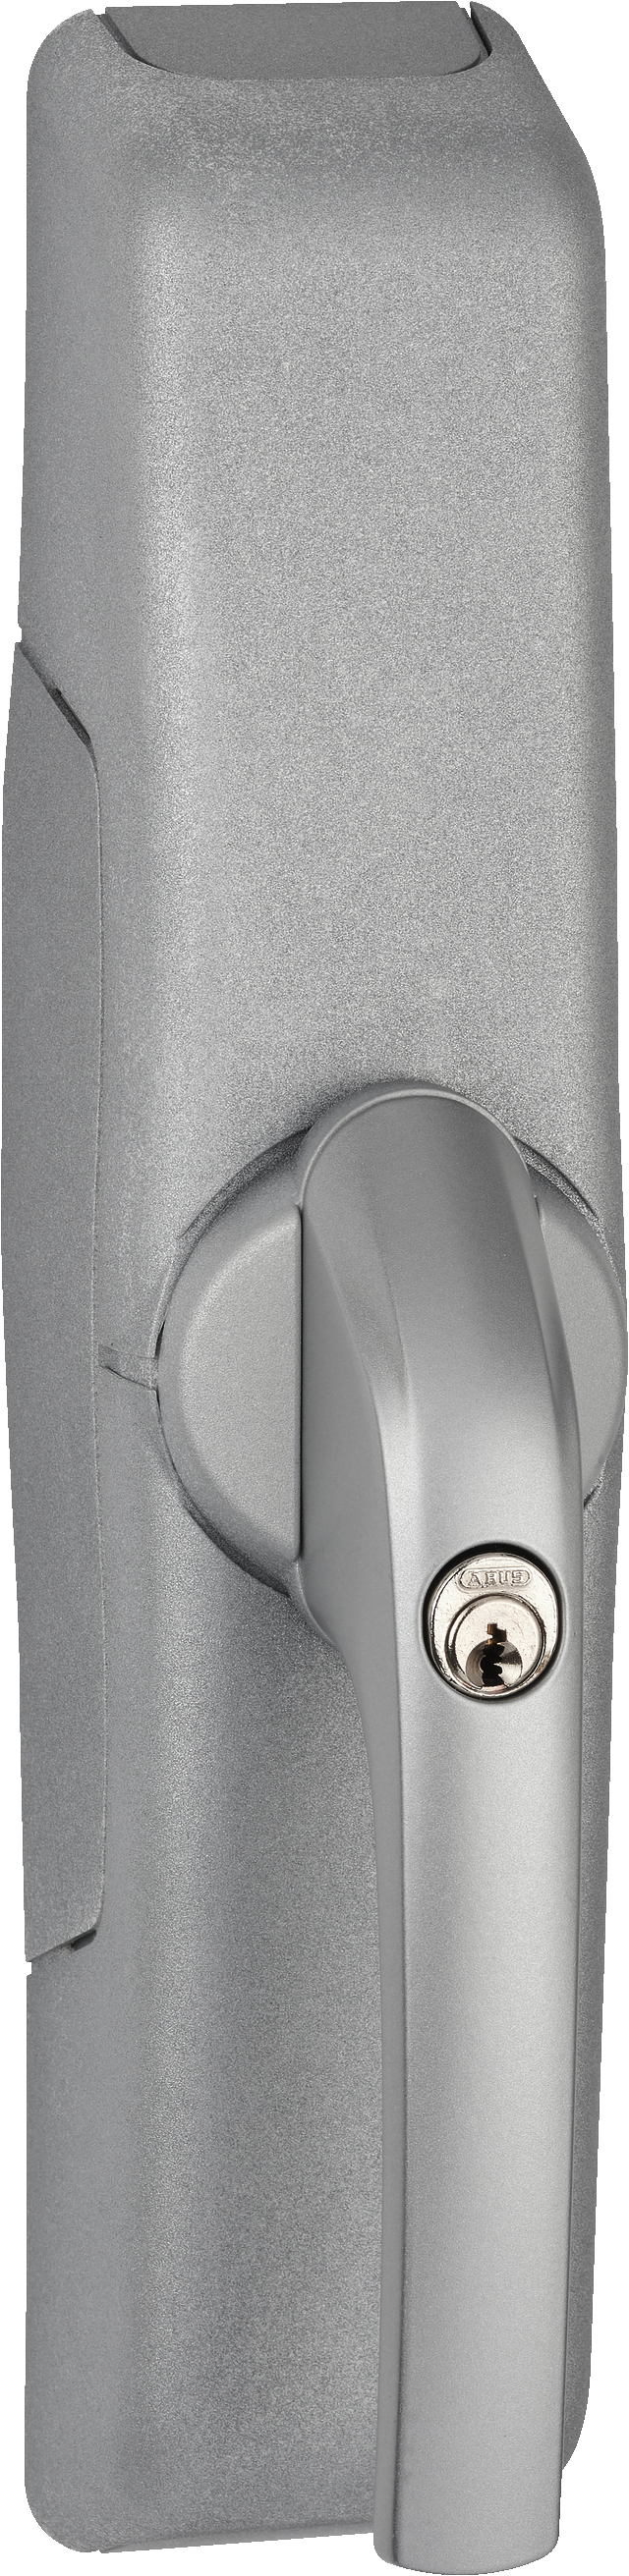 radiowy napęd okienny HomeTec Pro FCA3000 srebrny ukośny widok z przodu